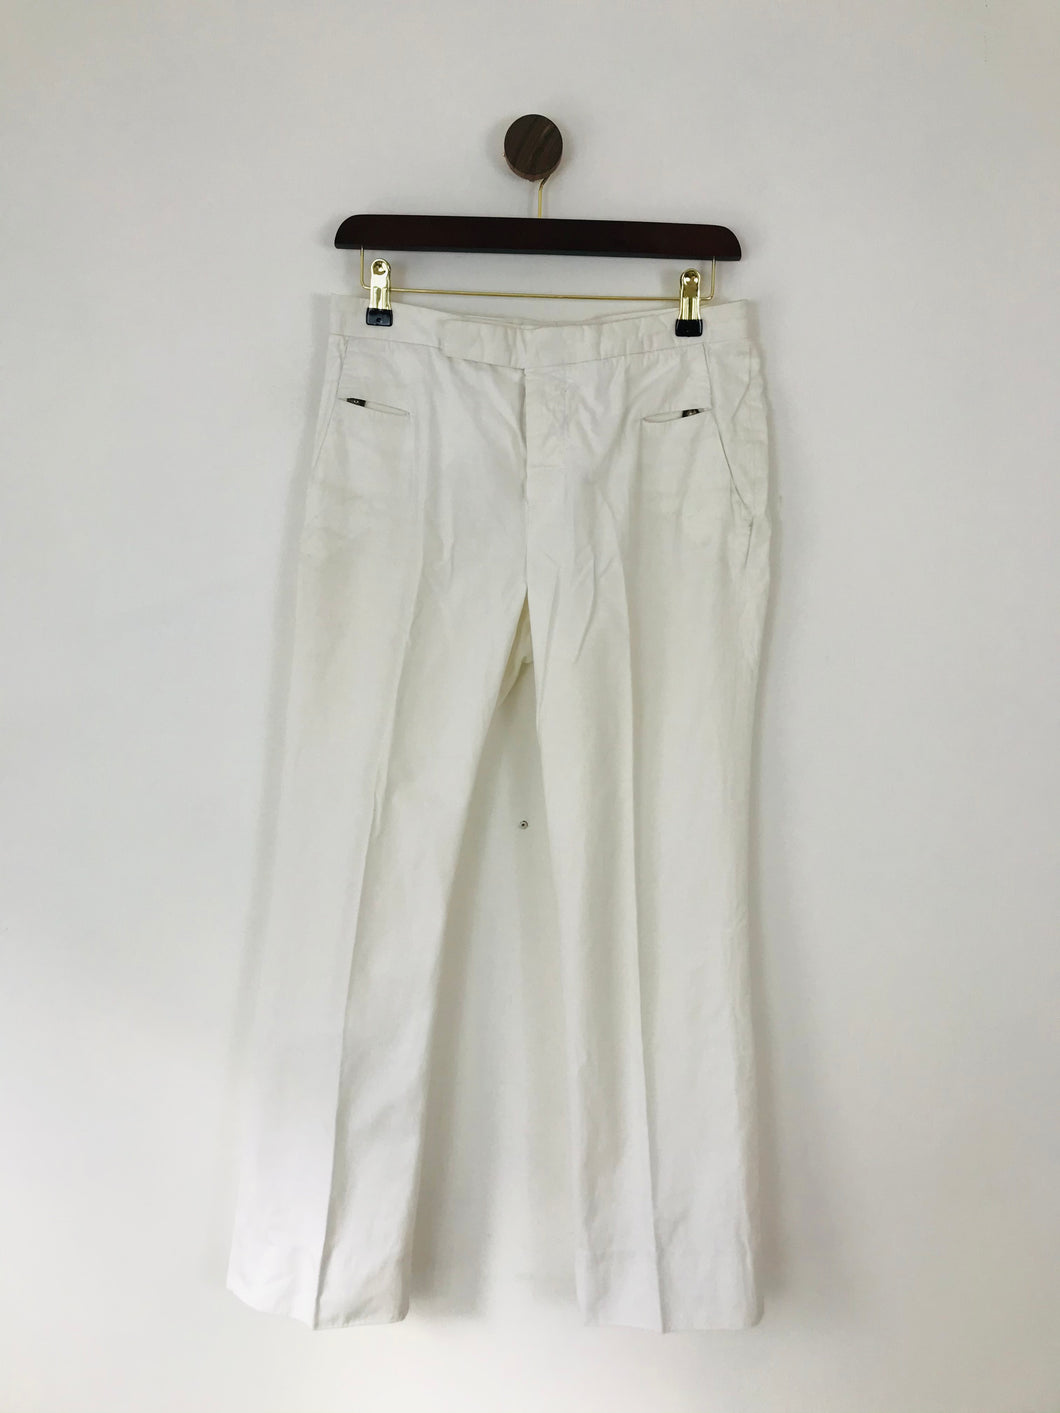 Marni Women’s Straight Leg Chino Trousers | 40 UK12 | White